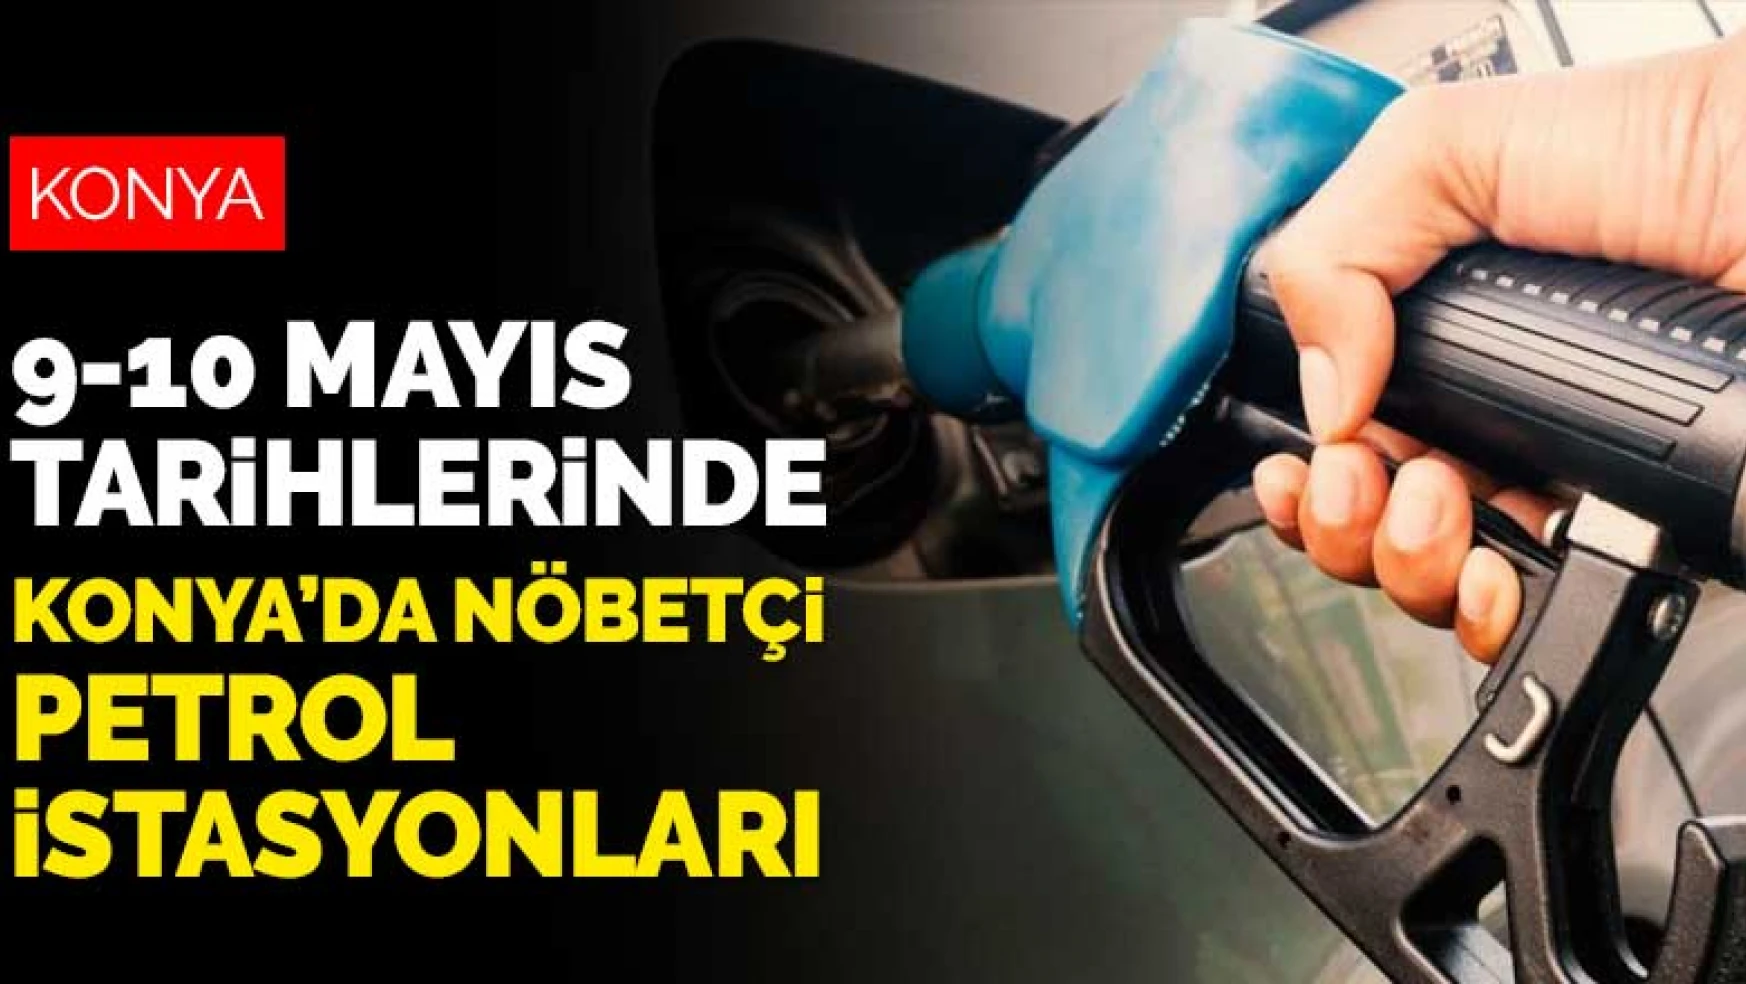 Konya'da 9 Mayıs ve 10 Mayıs'ta nöbetçi olan petrol istasyonları! Tüm ilçeler